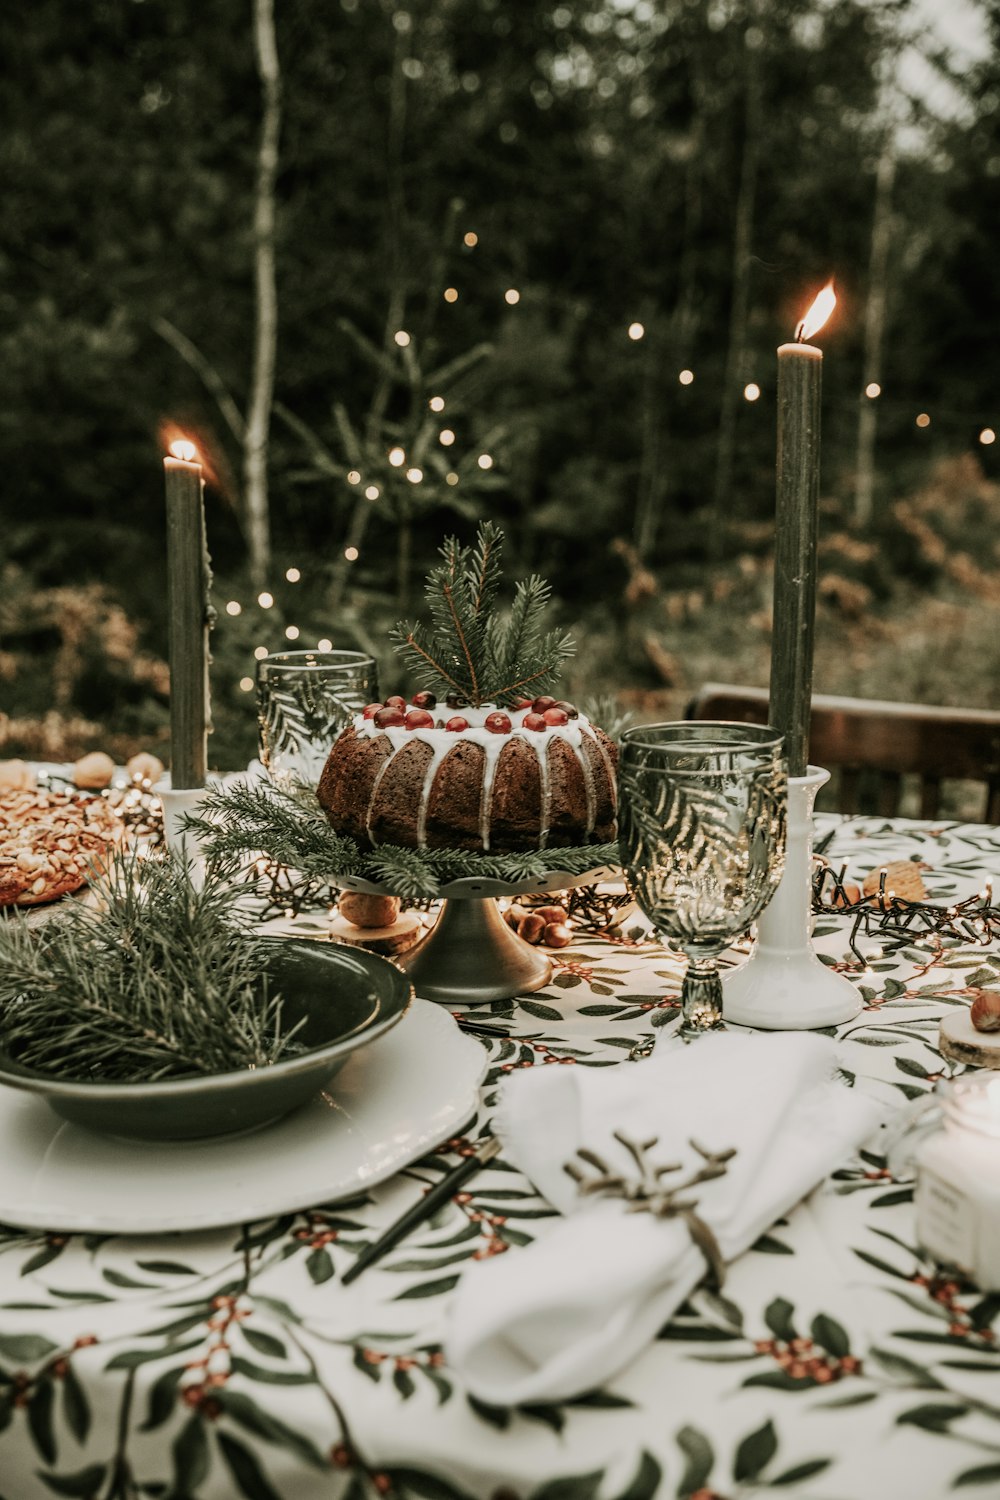 케이크와 양초가있는 테이블